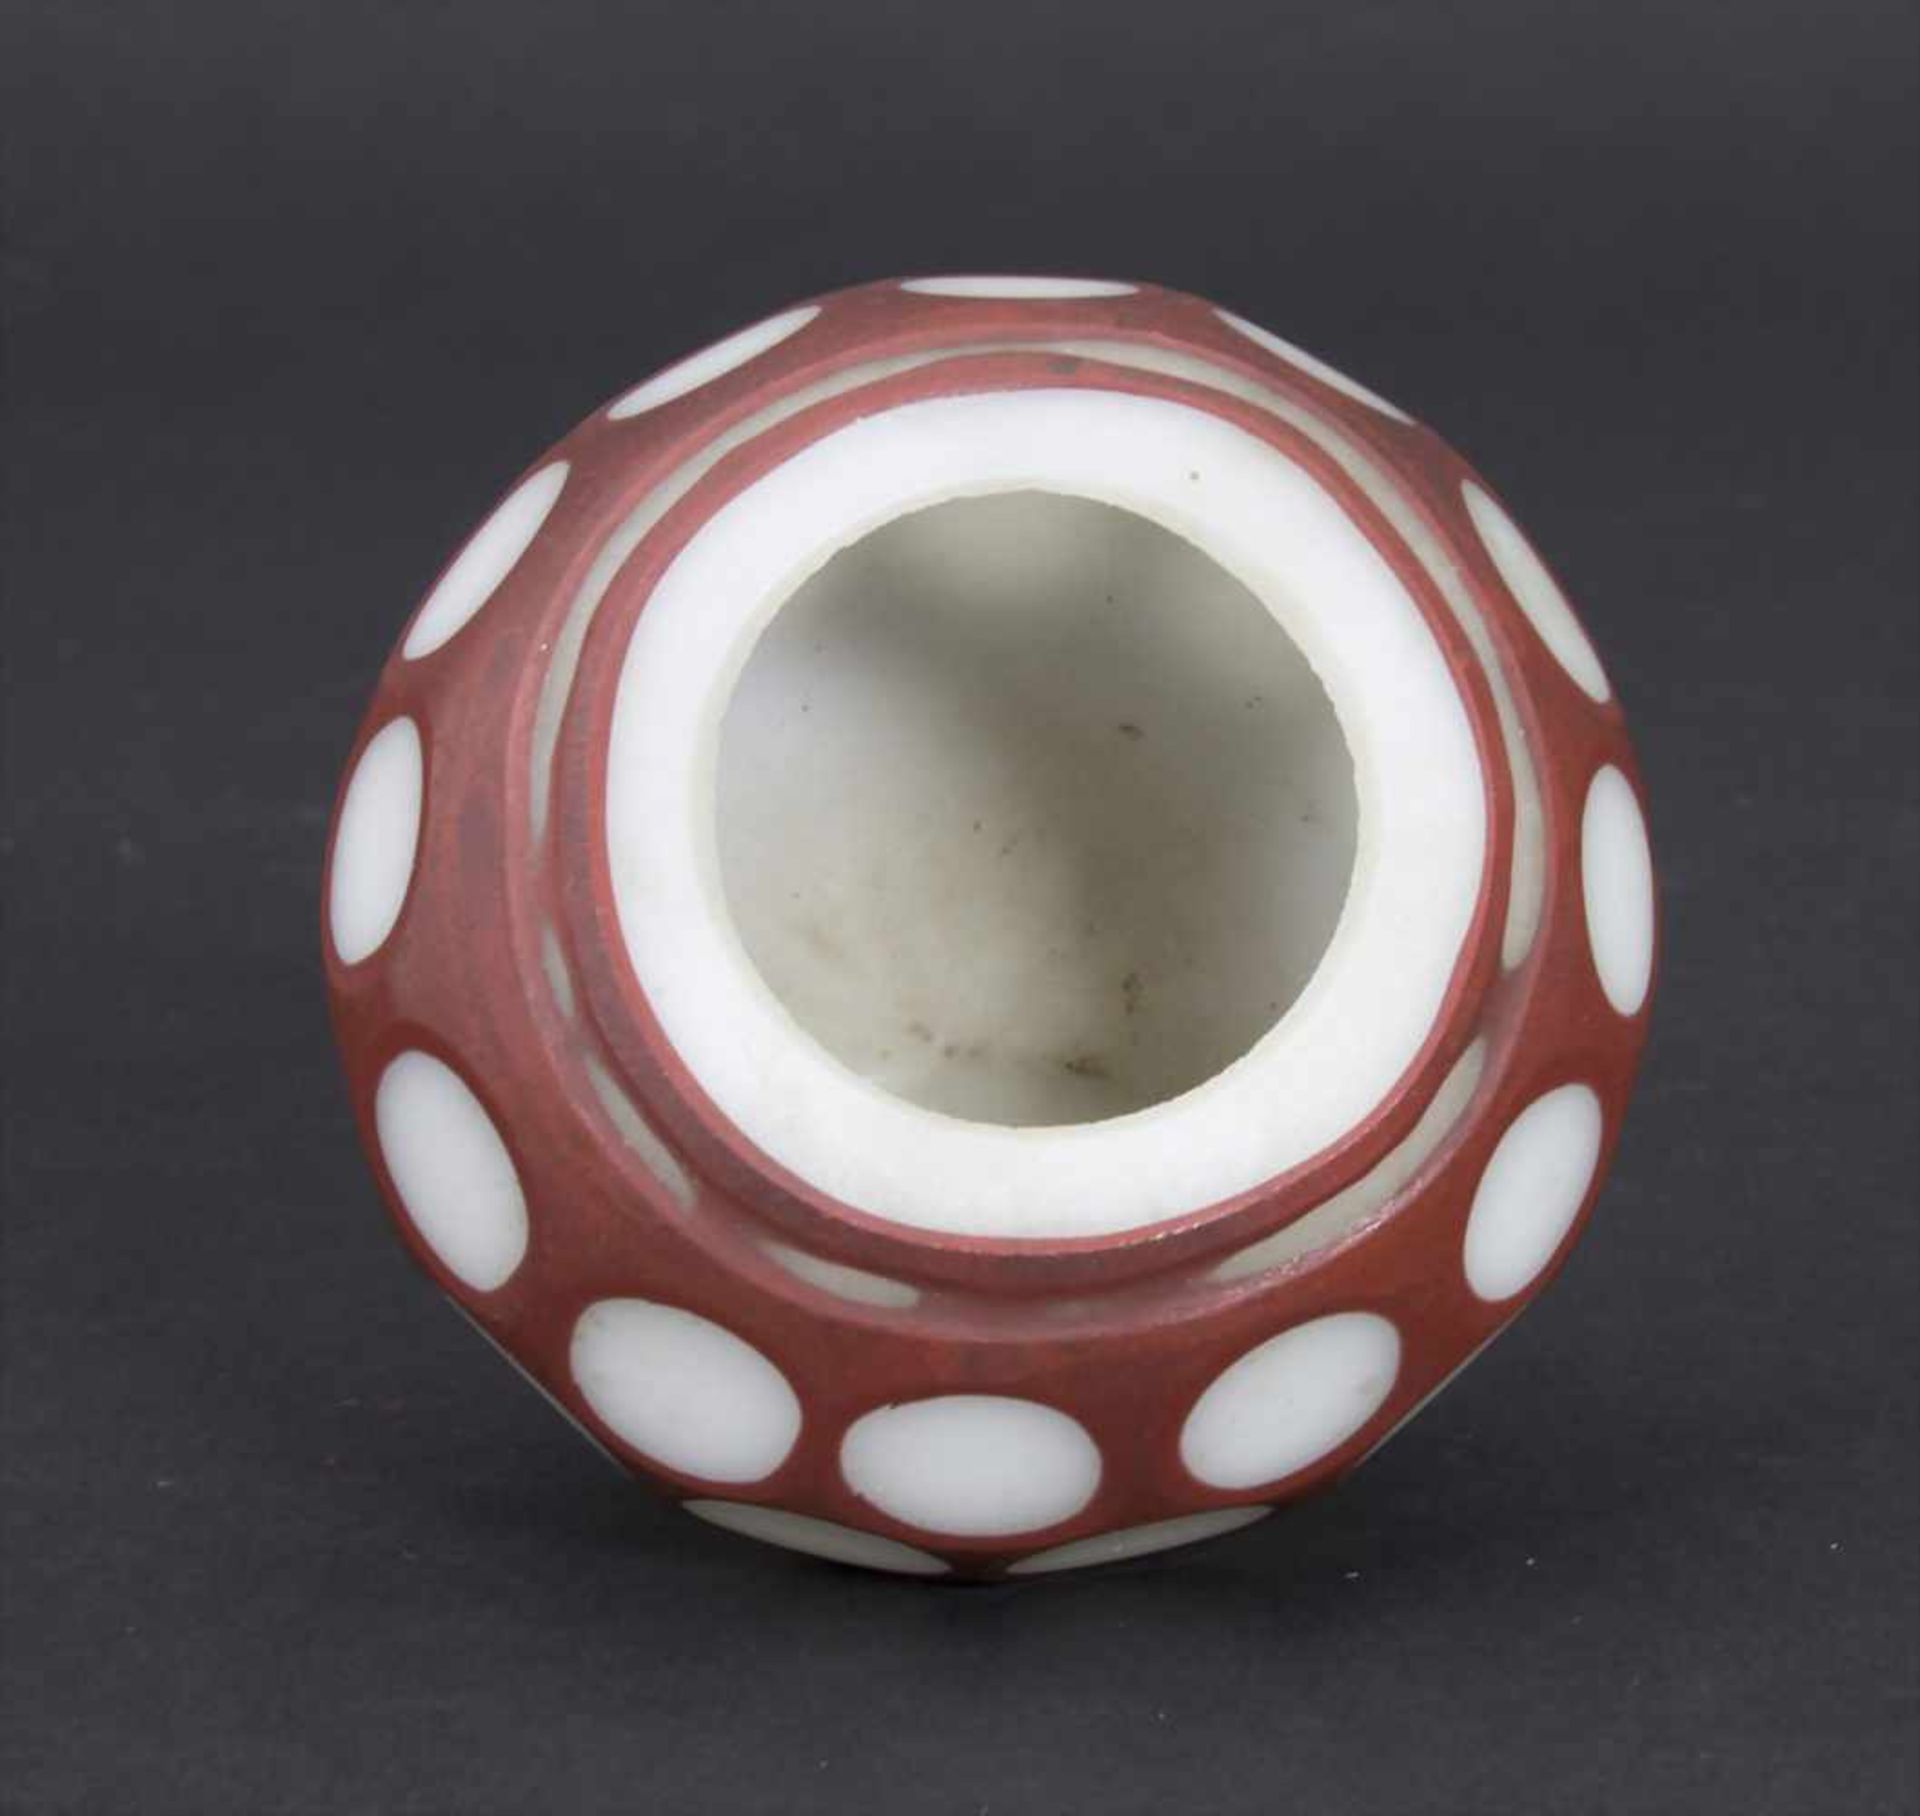 Miniatur-Ziervase, China, 18./19. Jh.Material: opakweiß und rotbraun überfangenes Glas, Wandung - Bild 3 aus 5